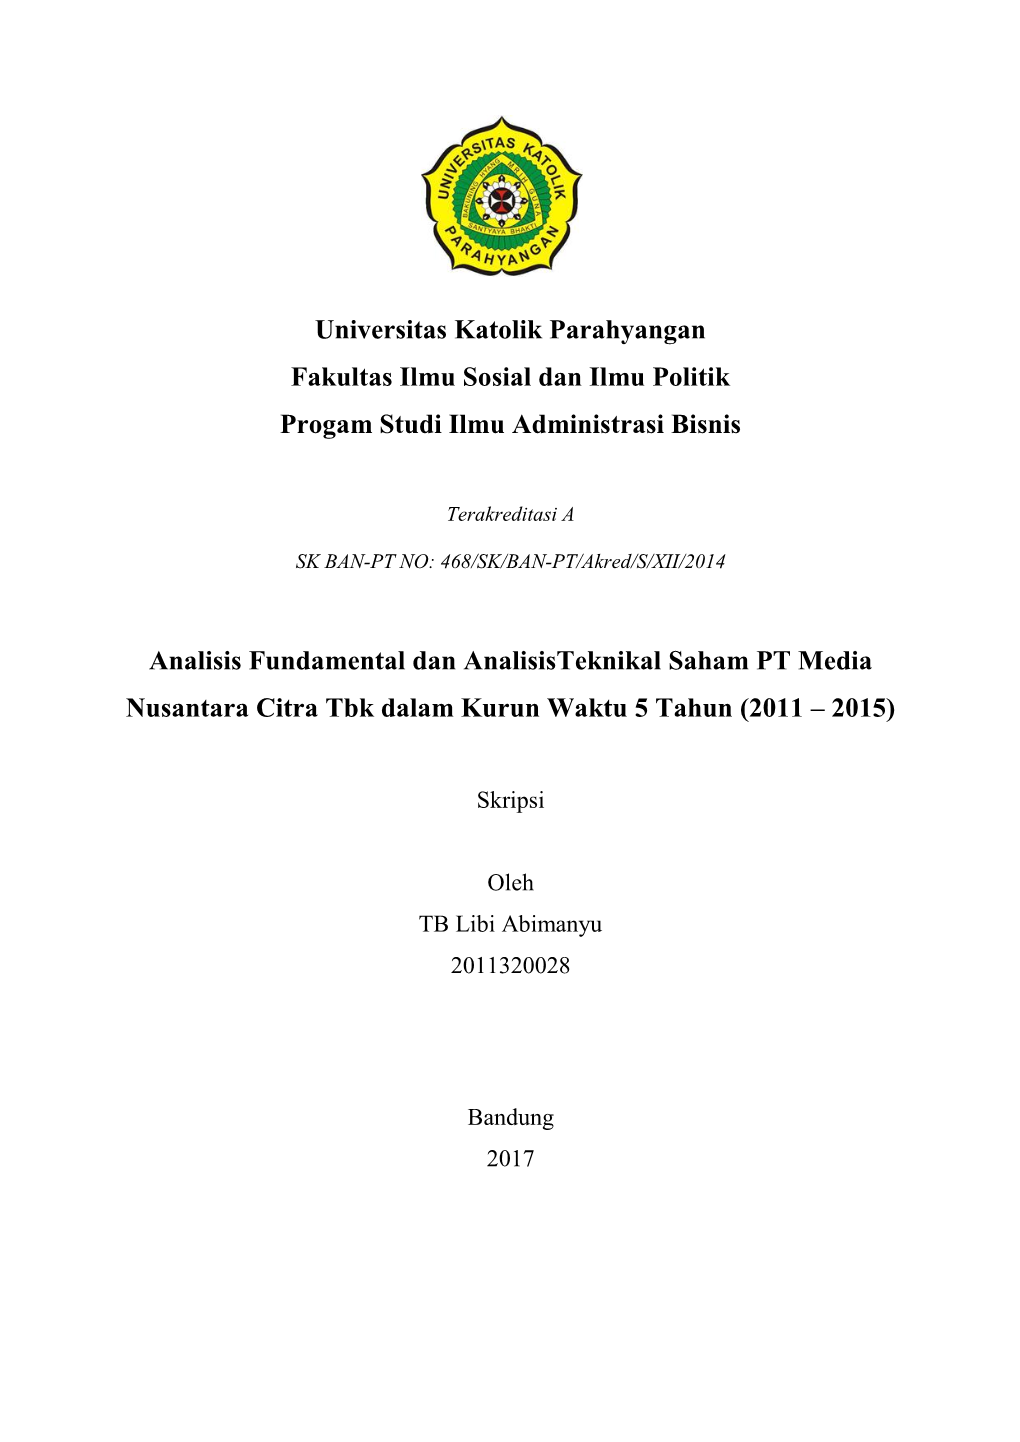 Analisis Fundamental Dan Analisisteknikal Saham PT Media Nusantara Citra Tbk Dalam Kurun Waktu 5 Tahun (2011 – 2015)